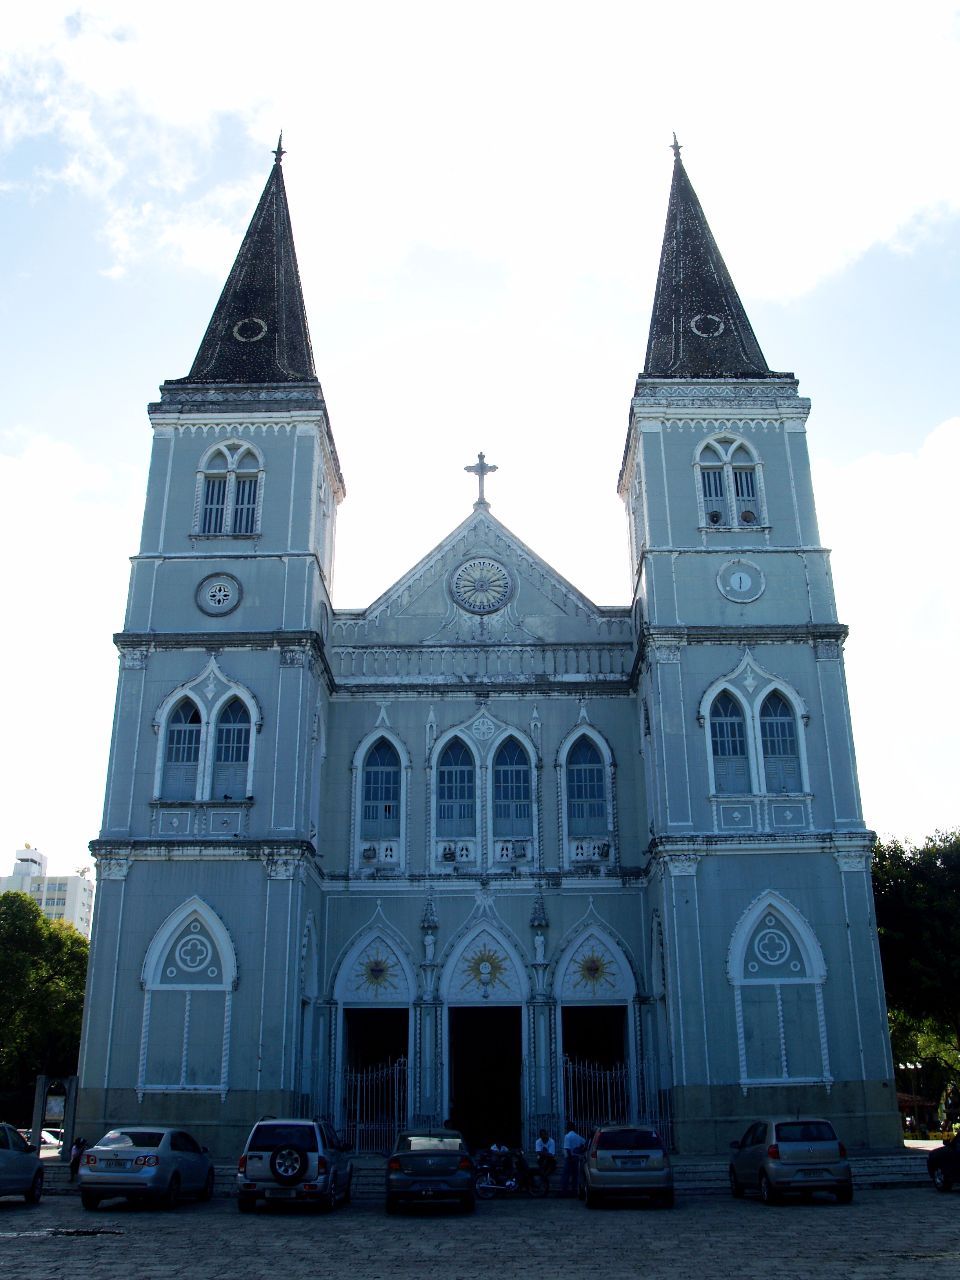 Кафедральный собор Аракажу / Catedral Metropolitana de Aracaju